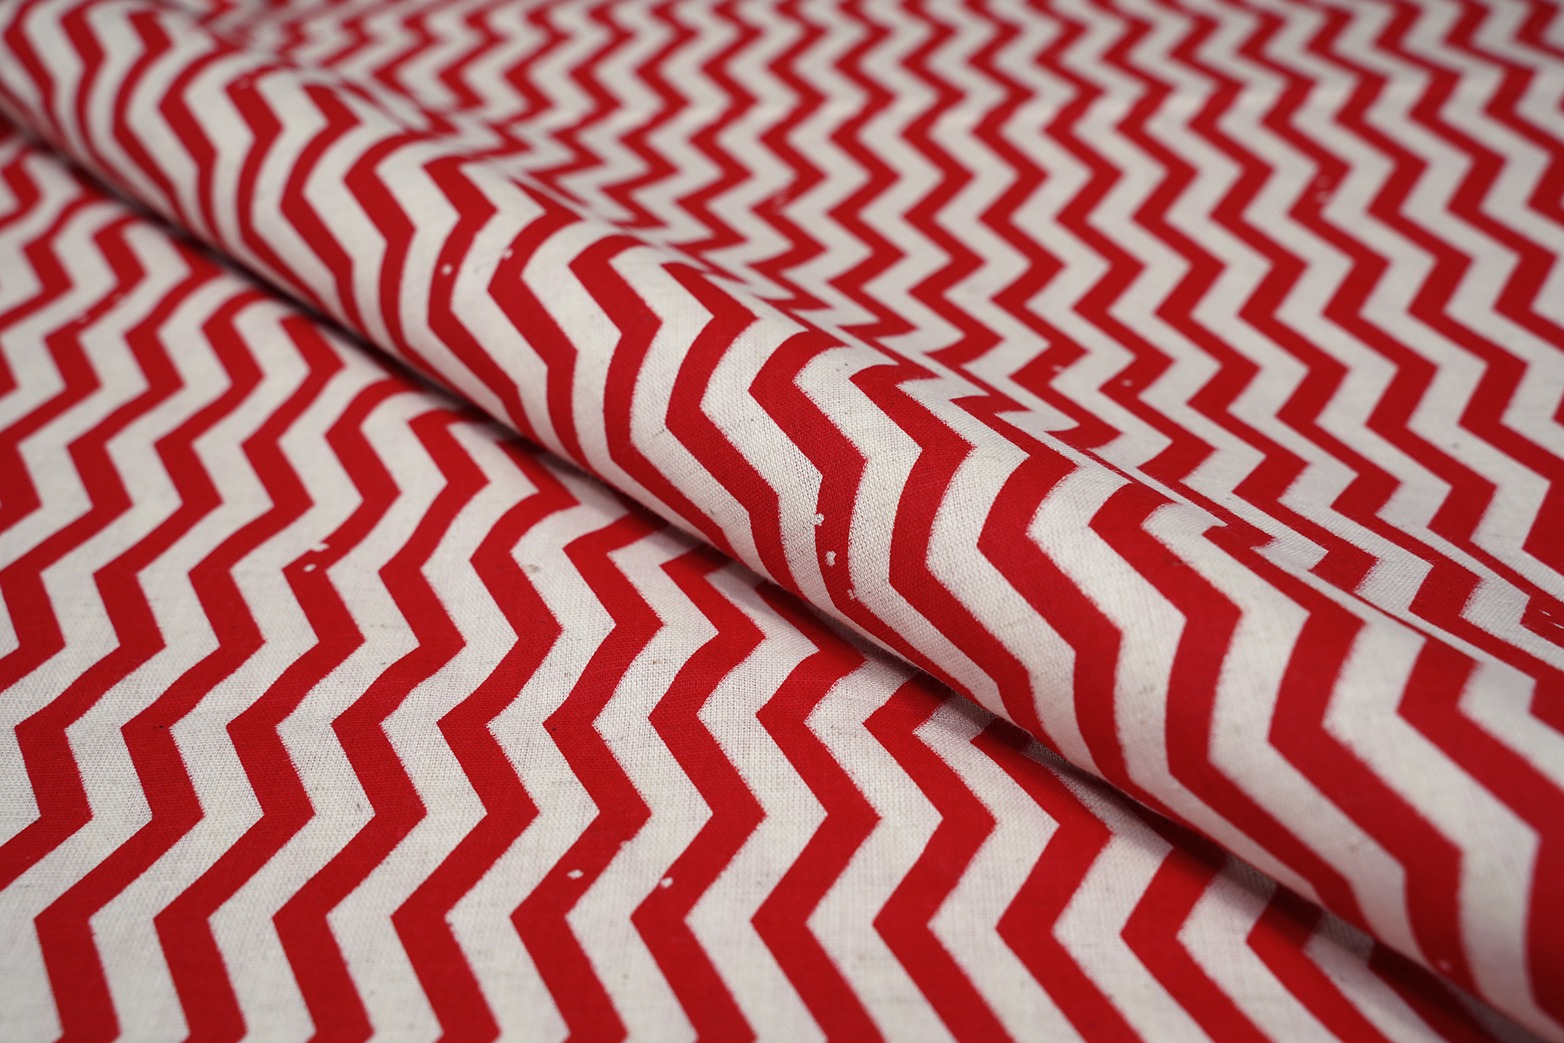 Bright Red & Cream Color Cotton Flax Print Chevron Pattern Screen Fabric - 10101